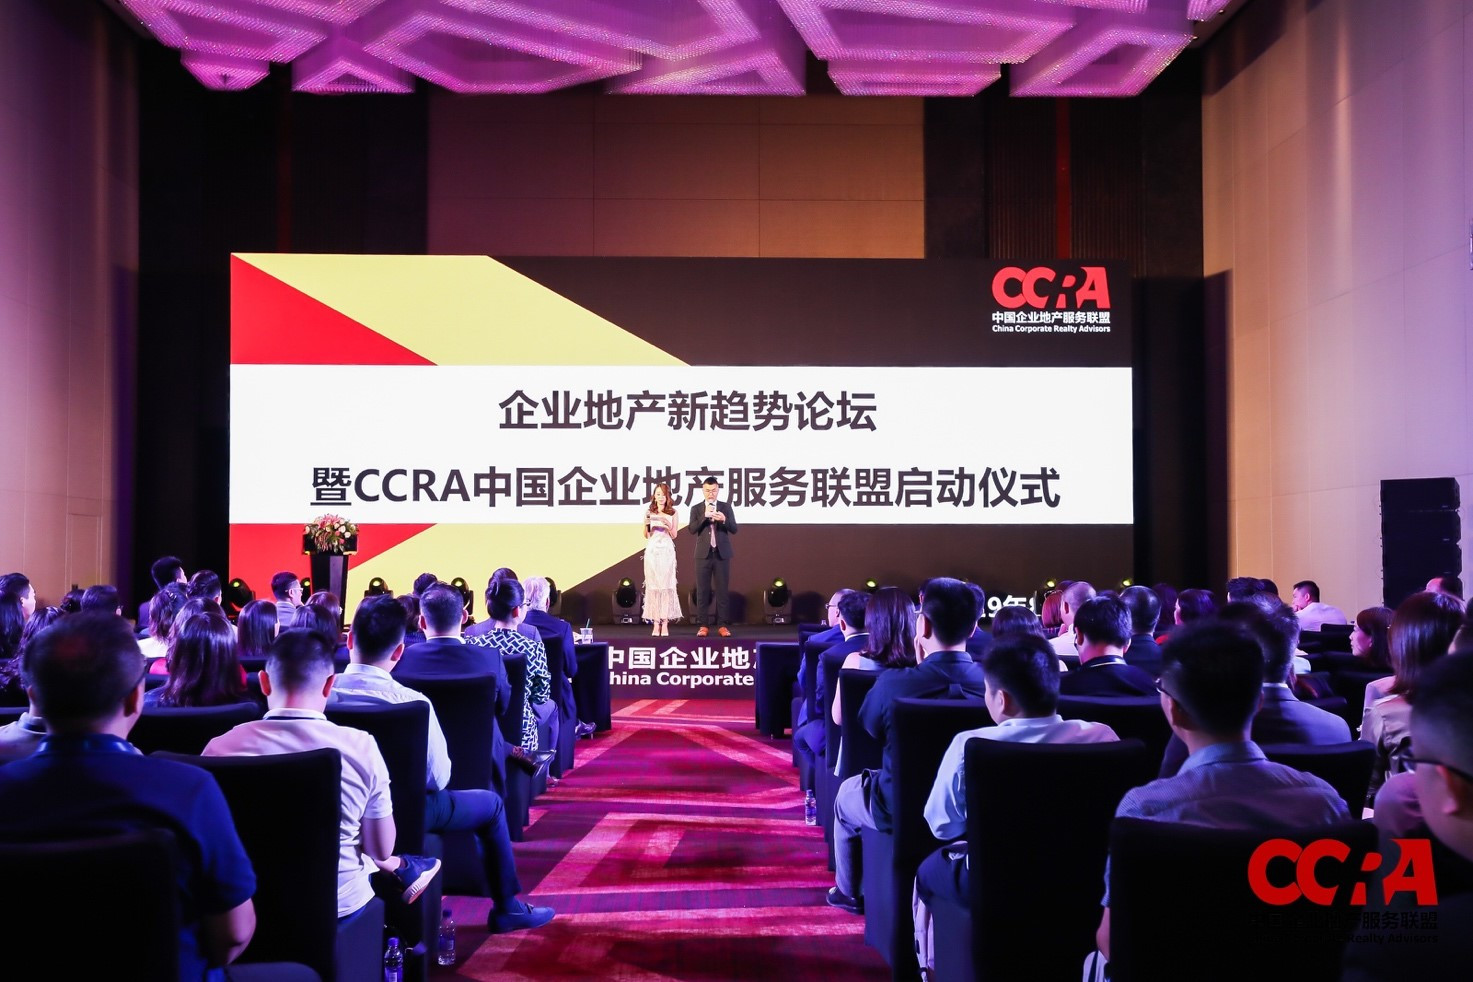 企业地产新趋势论坛暨CCRA中国企业地产服务联盟启动仪式顺利举行